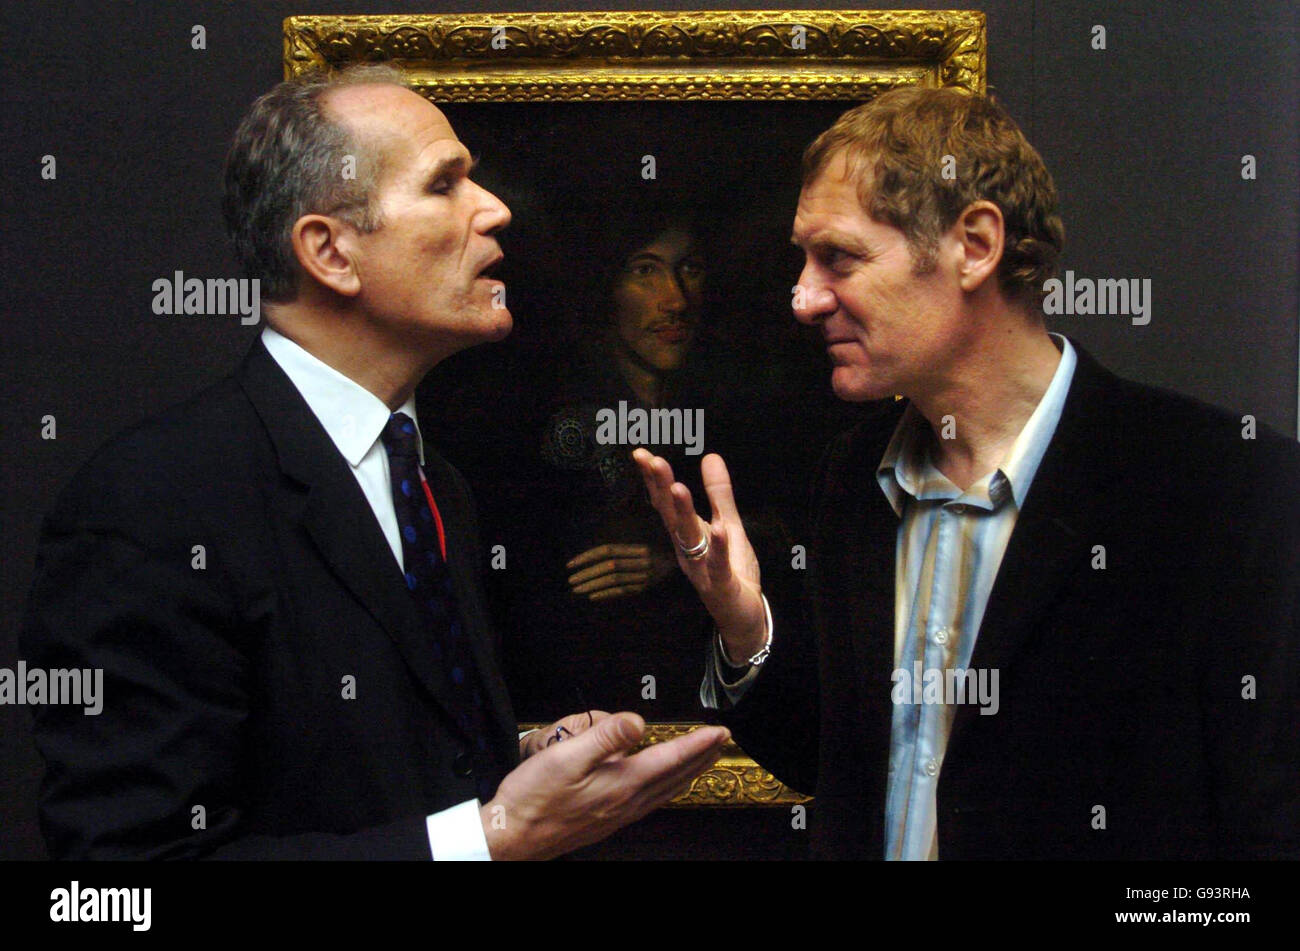 Le poète lauréat Andrew Motion (à droite) s'adresse au directeur du Musée national du portrait, Sandy Nairne, devant le portrait le plus important du poète métaphysique anglais John donne, dans le centre de Londres, le vendredi 27 janvier 2006. Banque D'Images